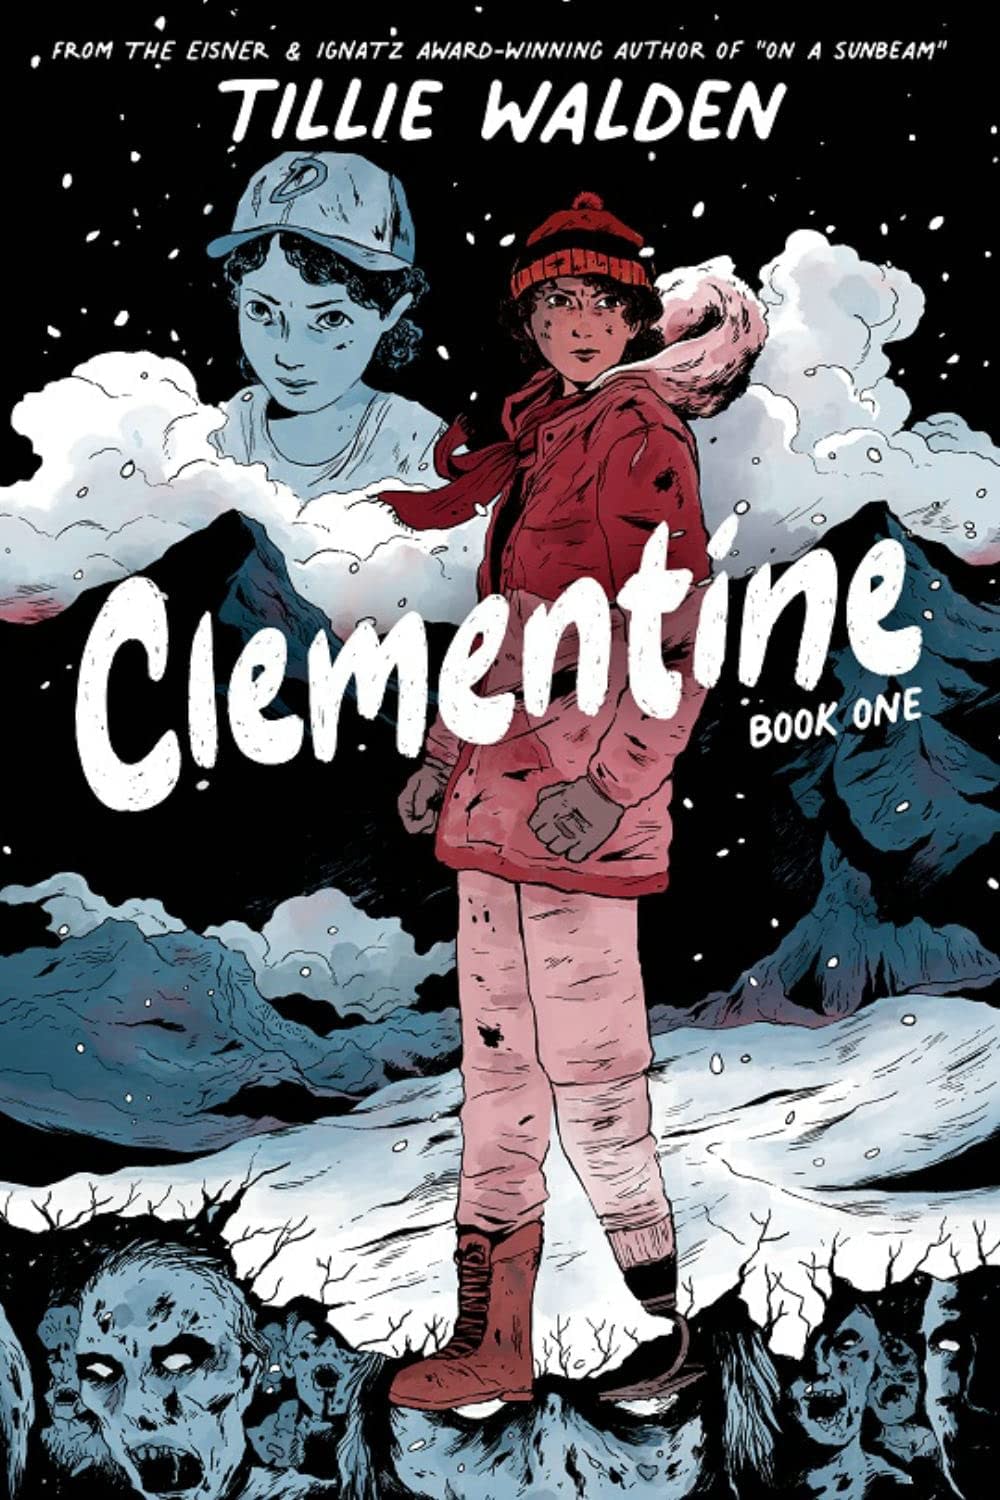 tryk Flere Barmhjertige Walking Dead: Clementine Book Two by Tille Walden For October, 2023